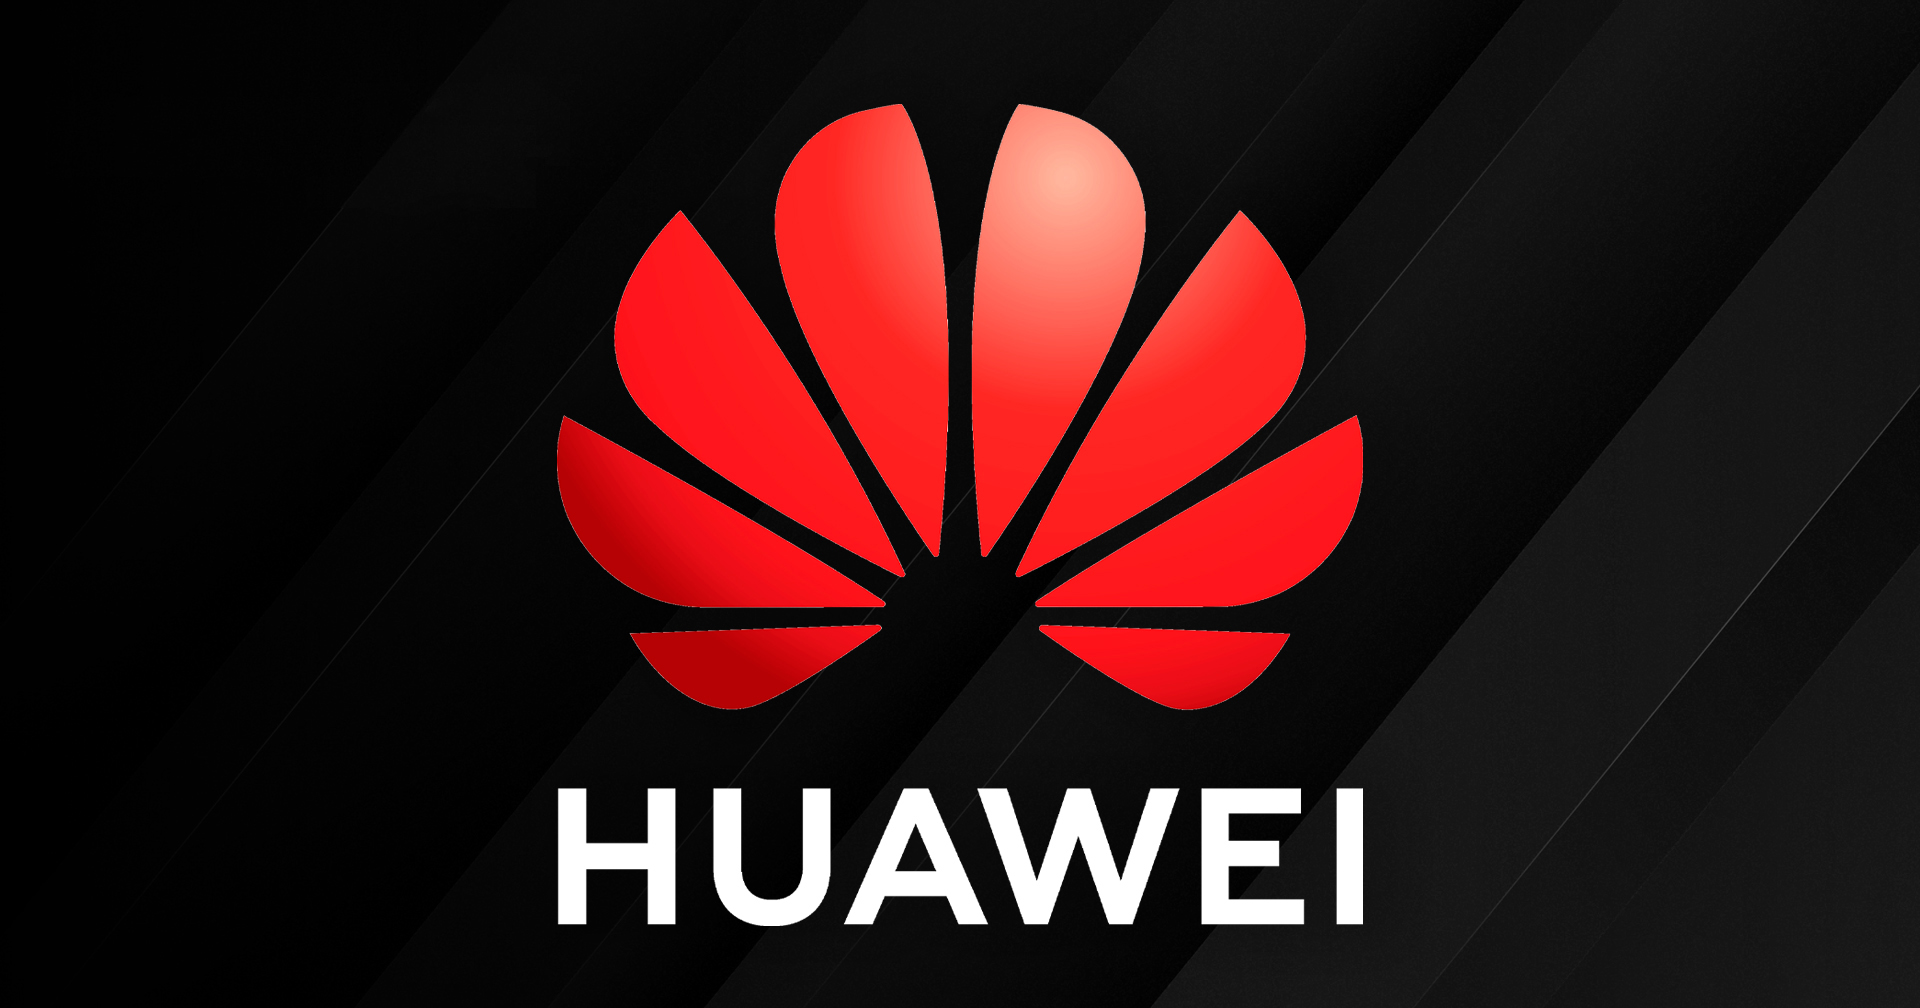 การเปลี่ยนอุปกรณ์ Huawei และ ZTE ในสหรัฐฯ งบบาน 185,000 ล้านบาท